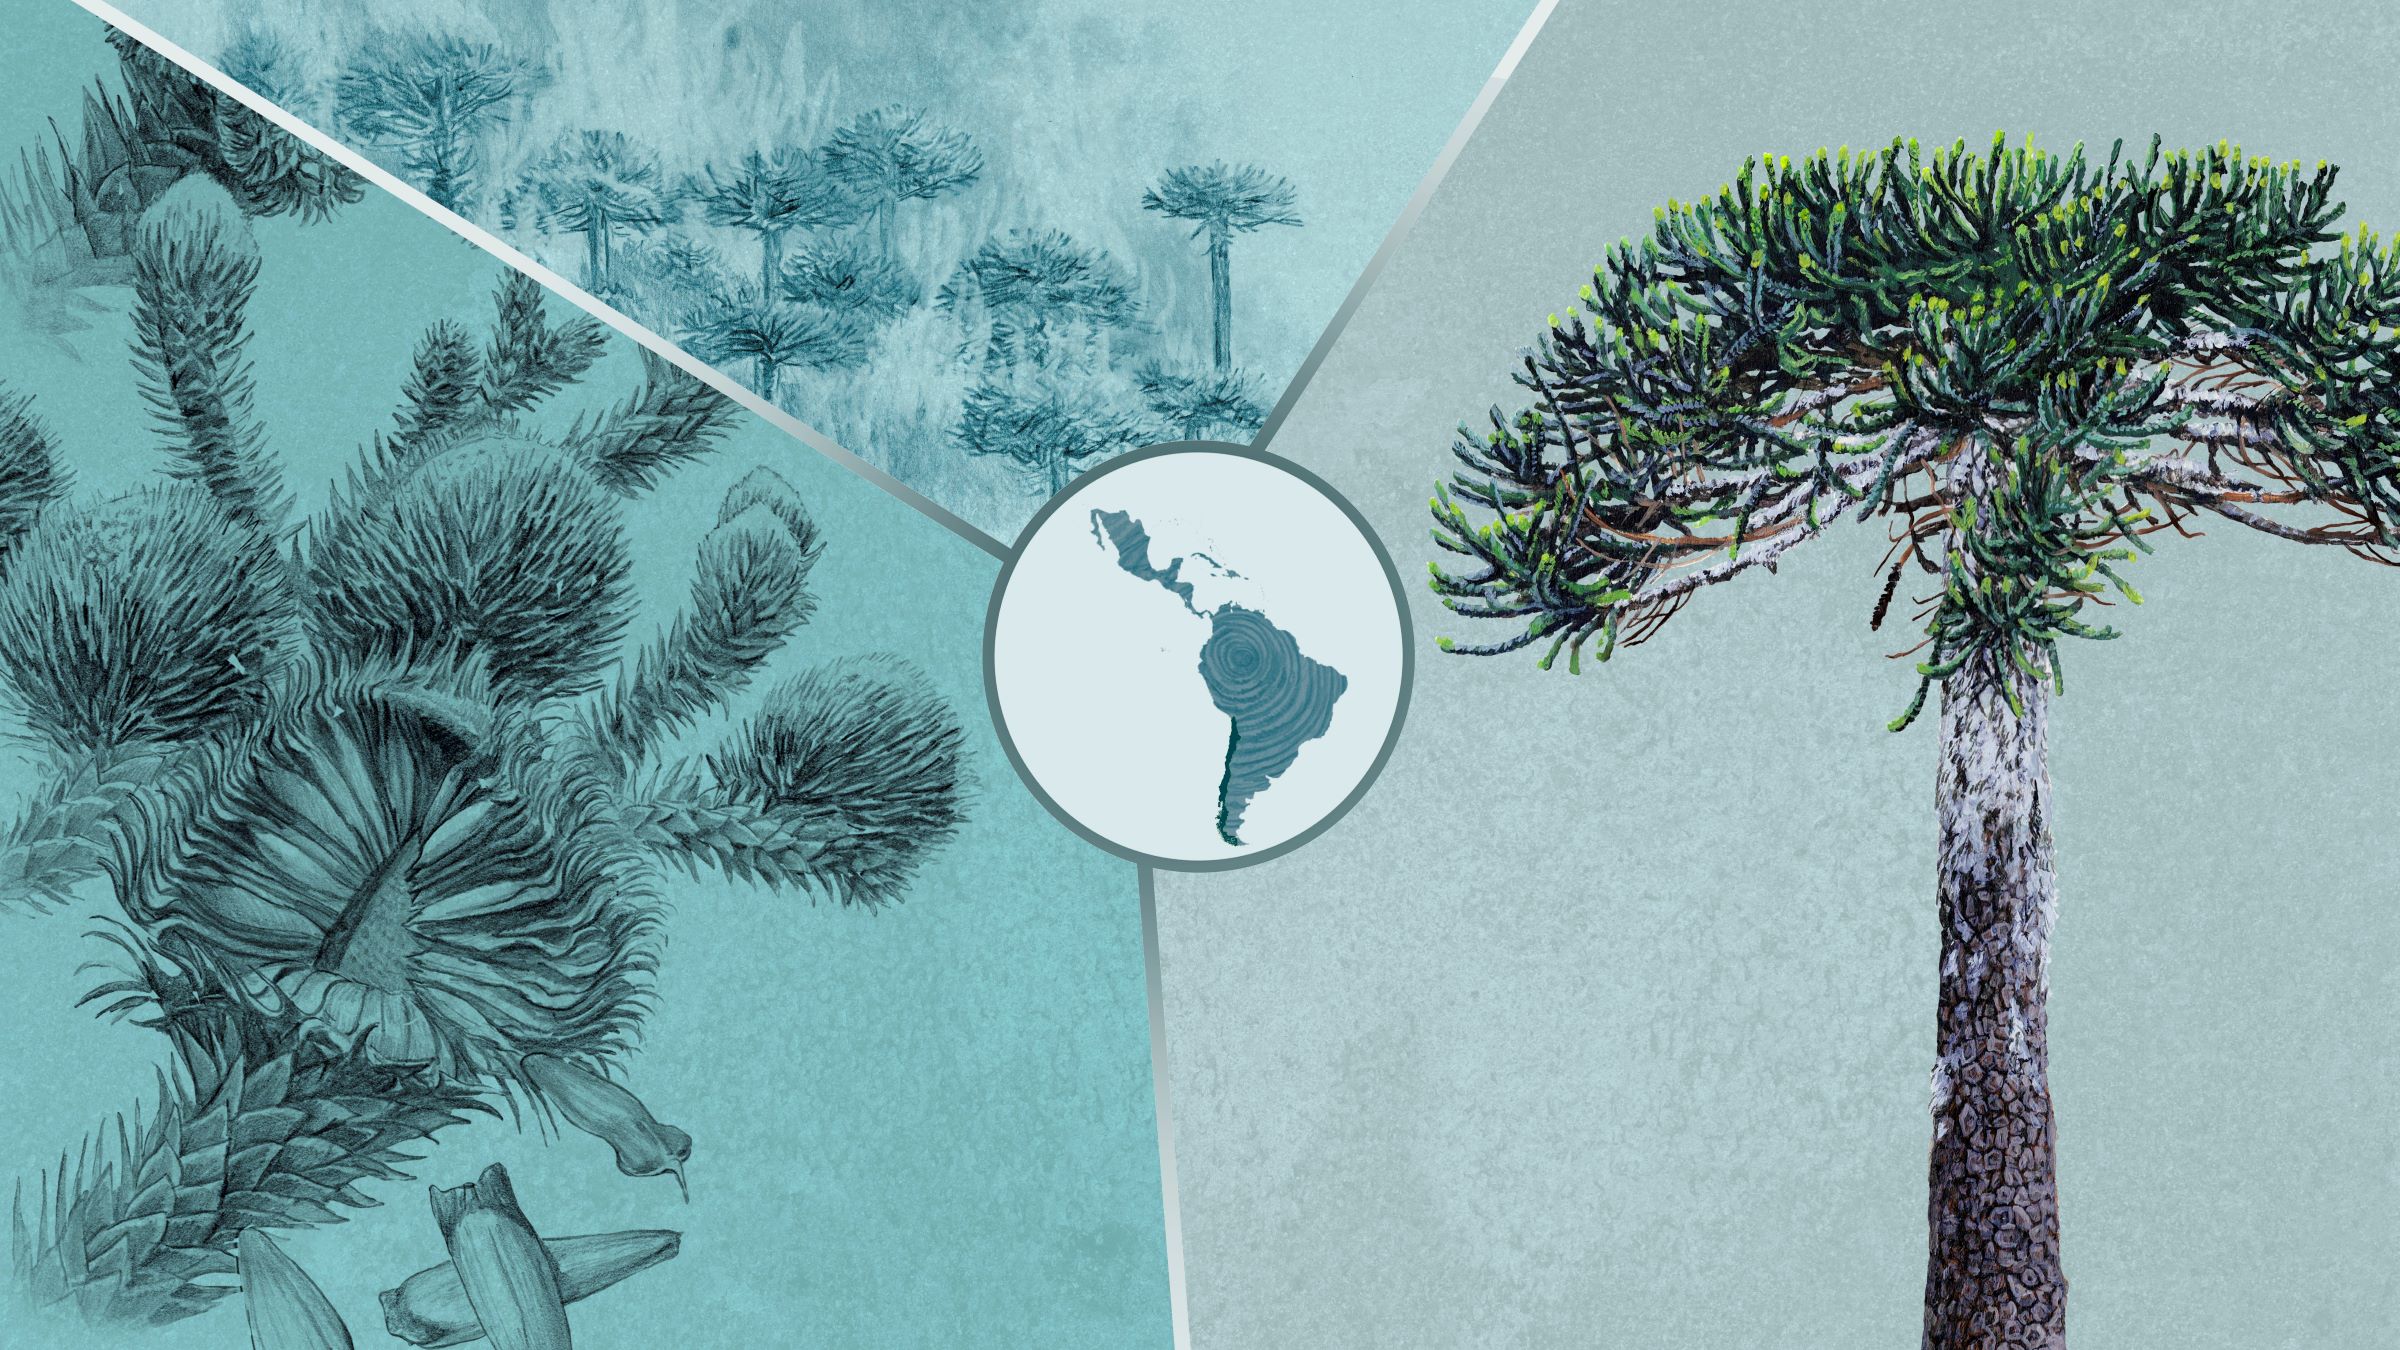 Especial | Chile | Araucaria: el árbol sagrado que es memoria viva y se resiste a desaparecer